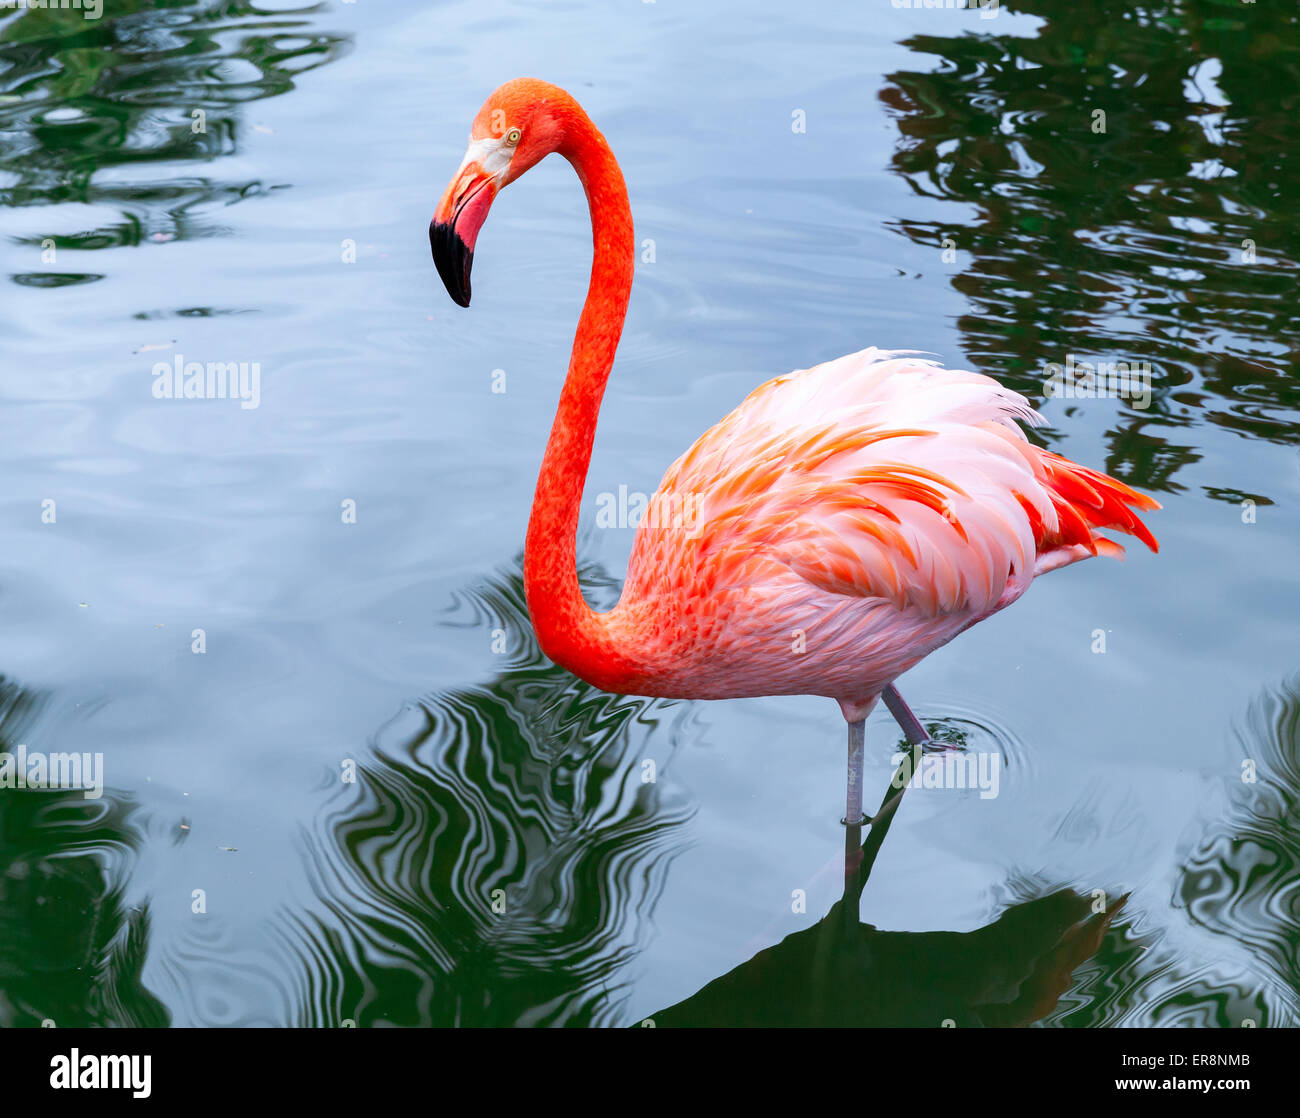 Flamant rose oiseau marche dans l'eau avec des réflexions Banque D'Images